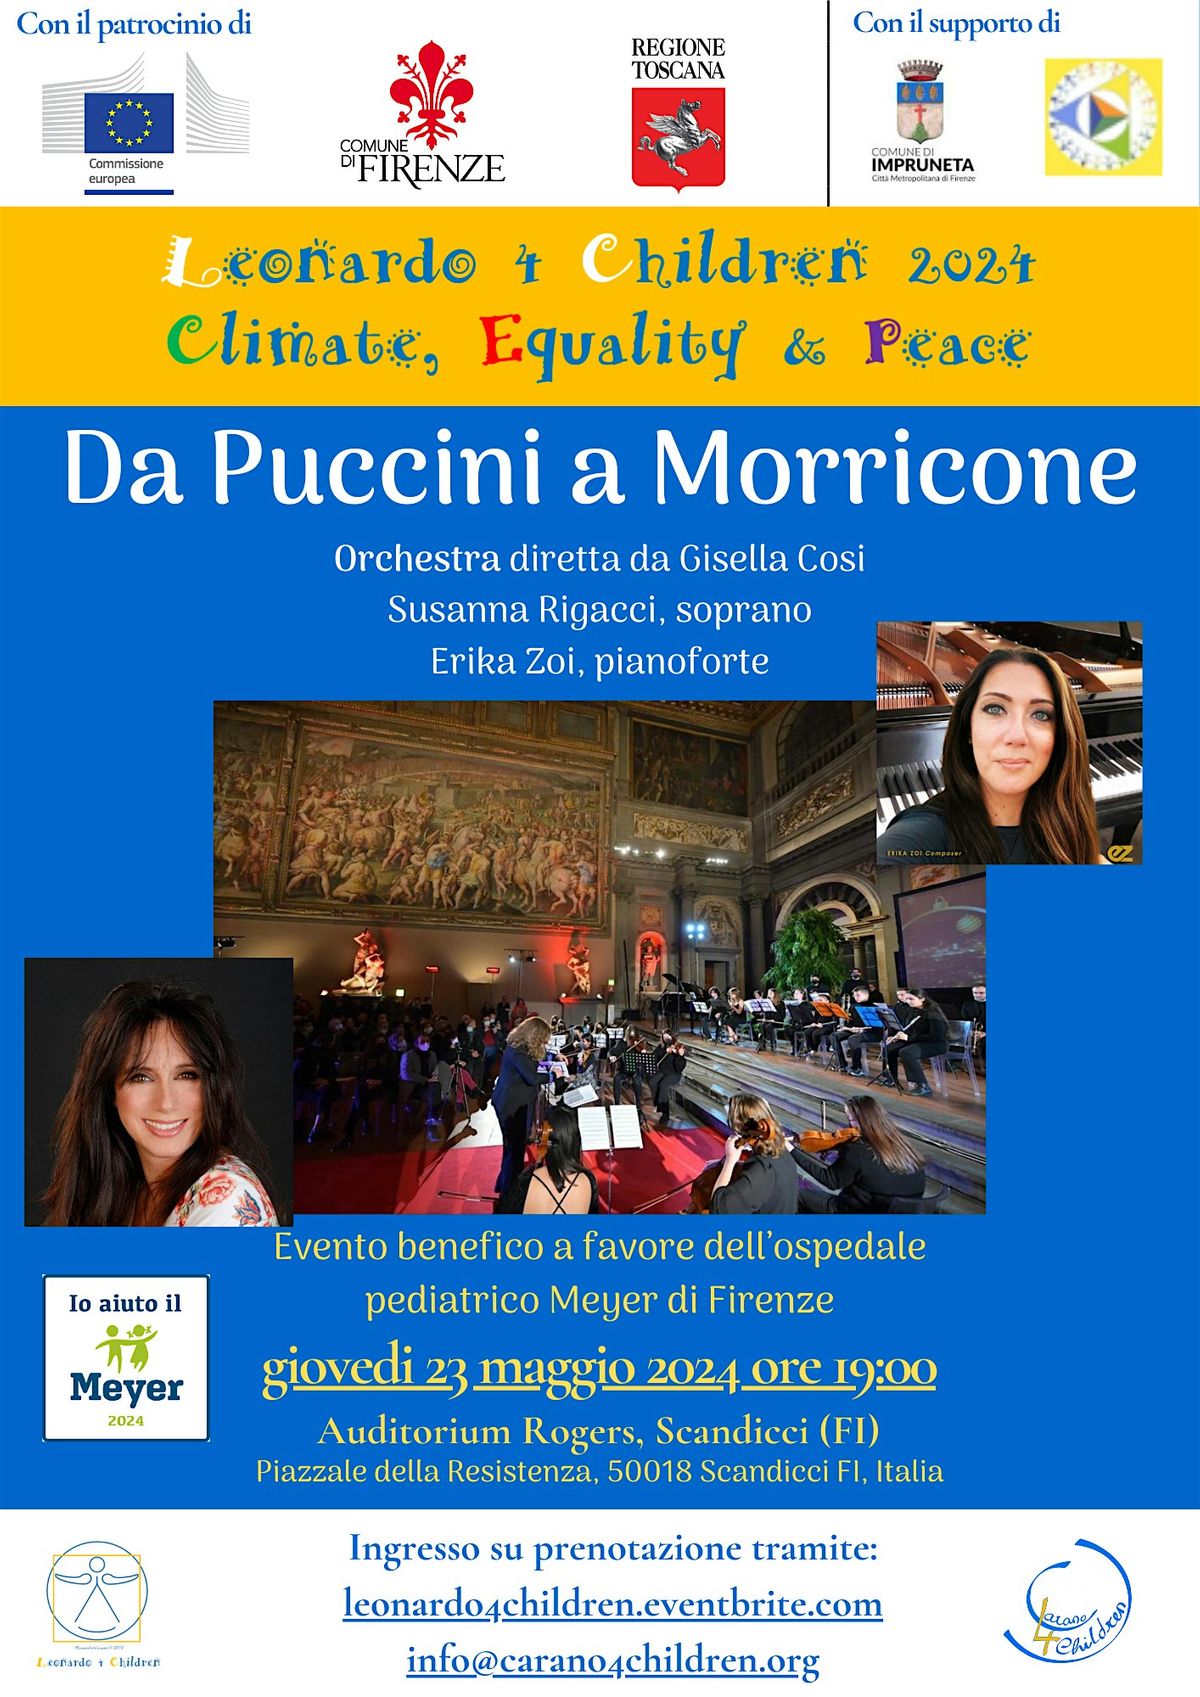 Da Puccini a Morricone: concerto benefico a favore del Meyer